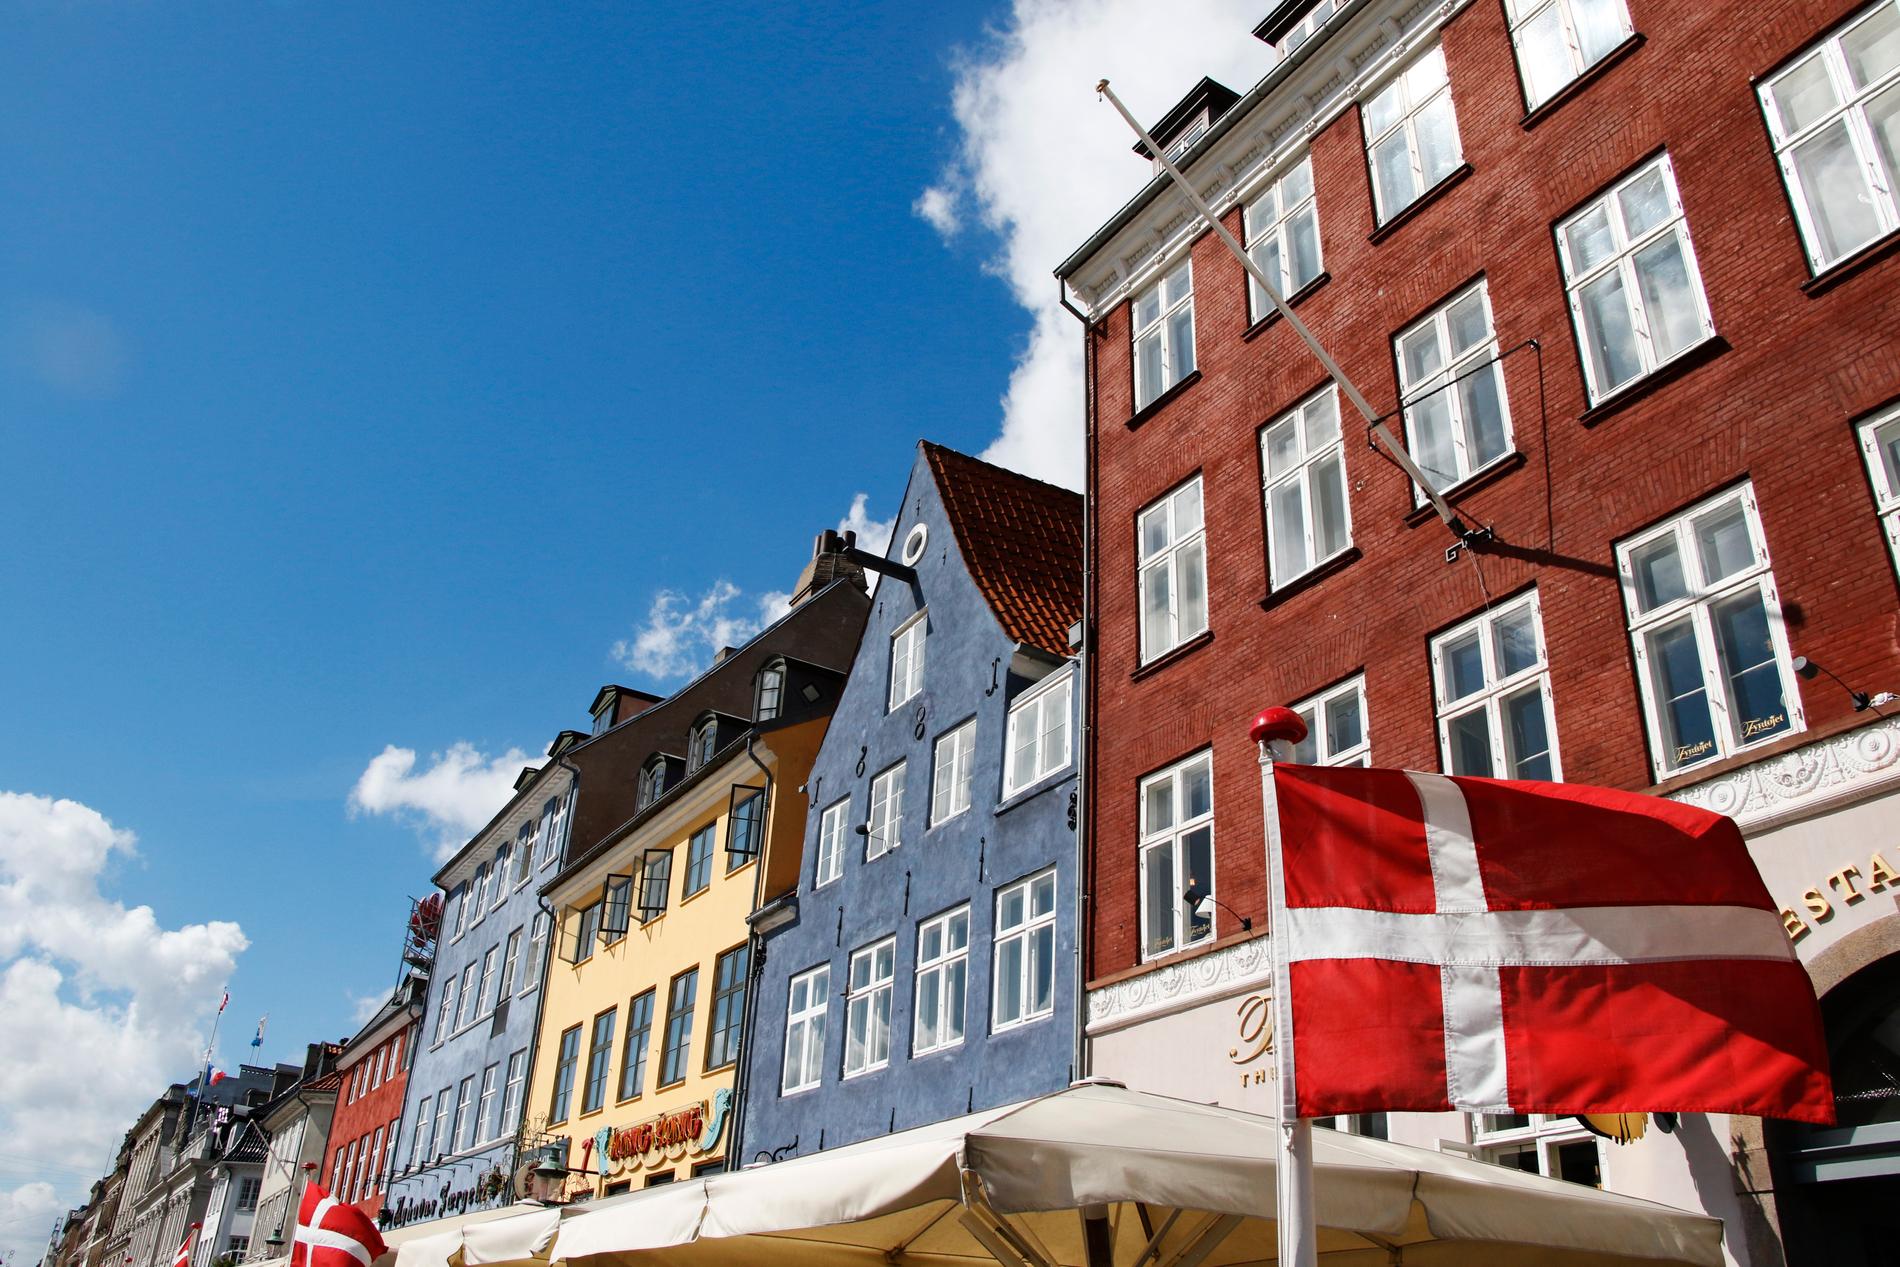 Asylsökande som kommer till Danmark får vända och åka till ett tredje land för att invänta asylbeslutet. Bilden från Nyhavn i Köpenhamn.